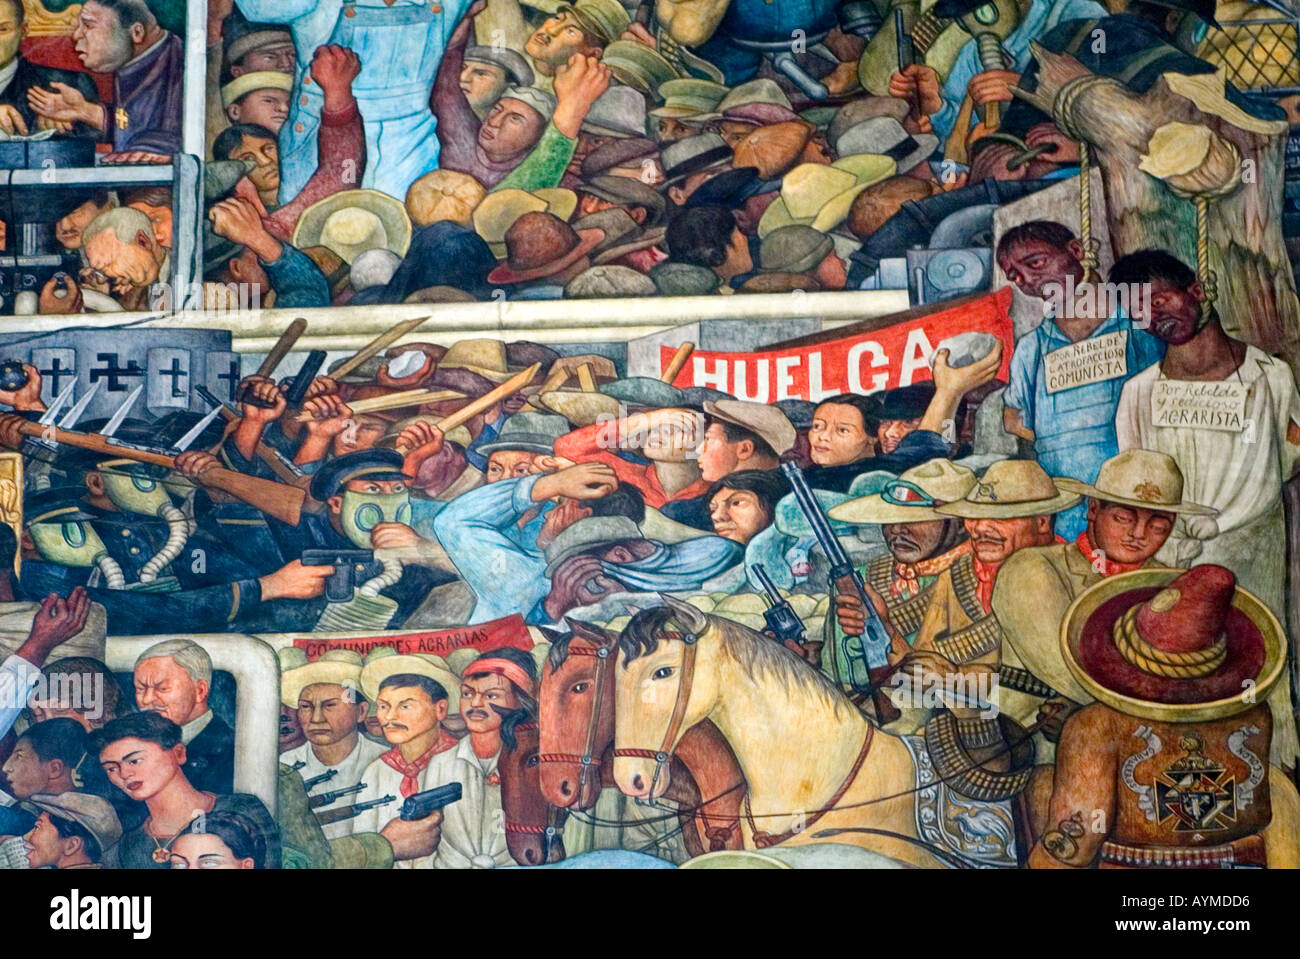 L'artista messicano Diego Rivera murale della storia messicana nel Palazzo Nazionale Palacio Nacional Città Del Messico Foto Stock